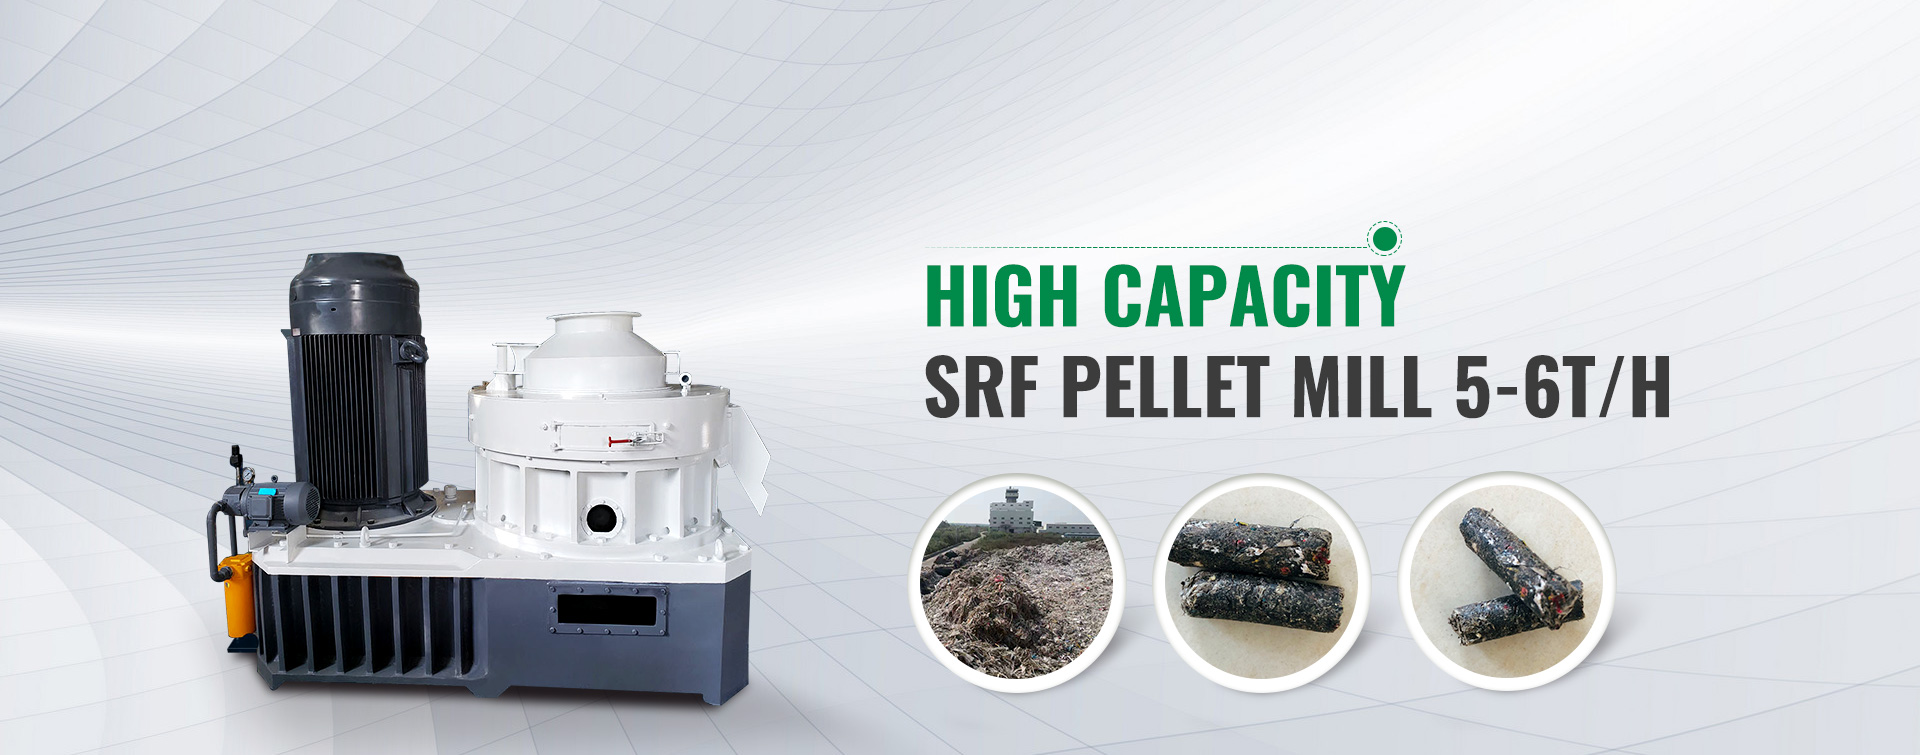 High Capacity  SRF Pellet Mill 5-6T/H 